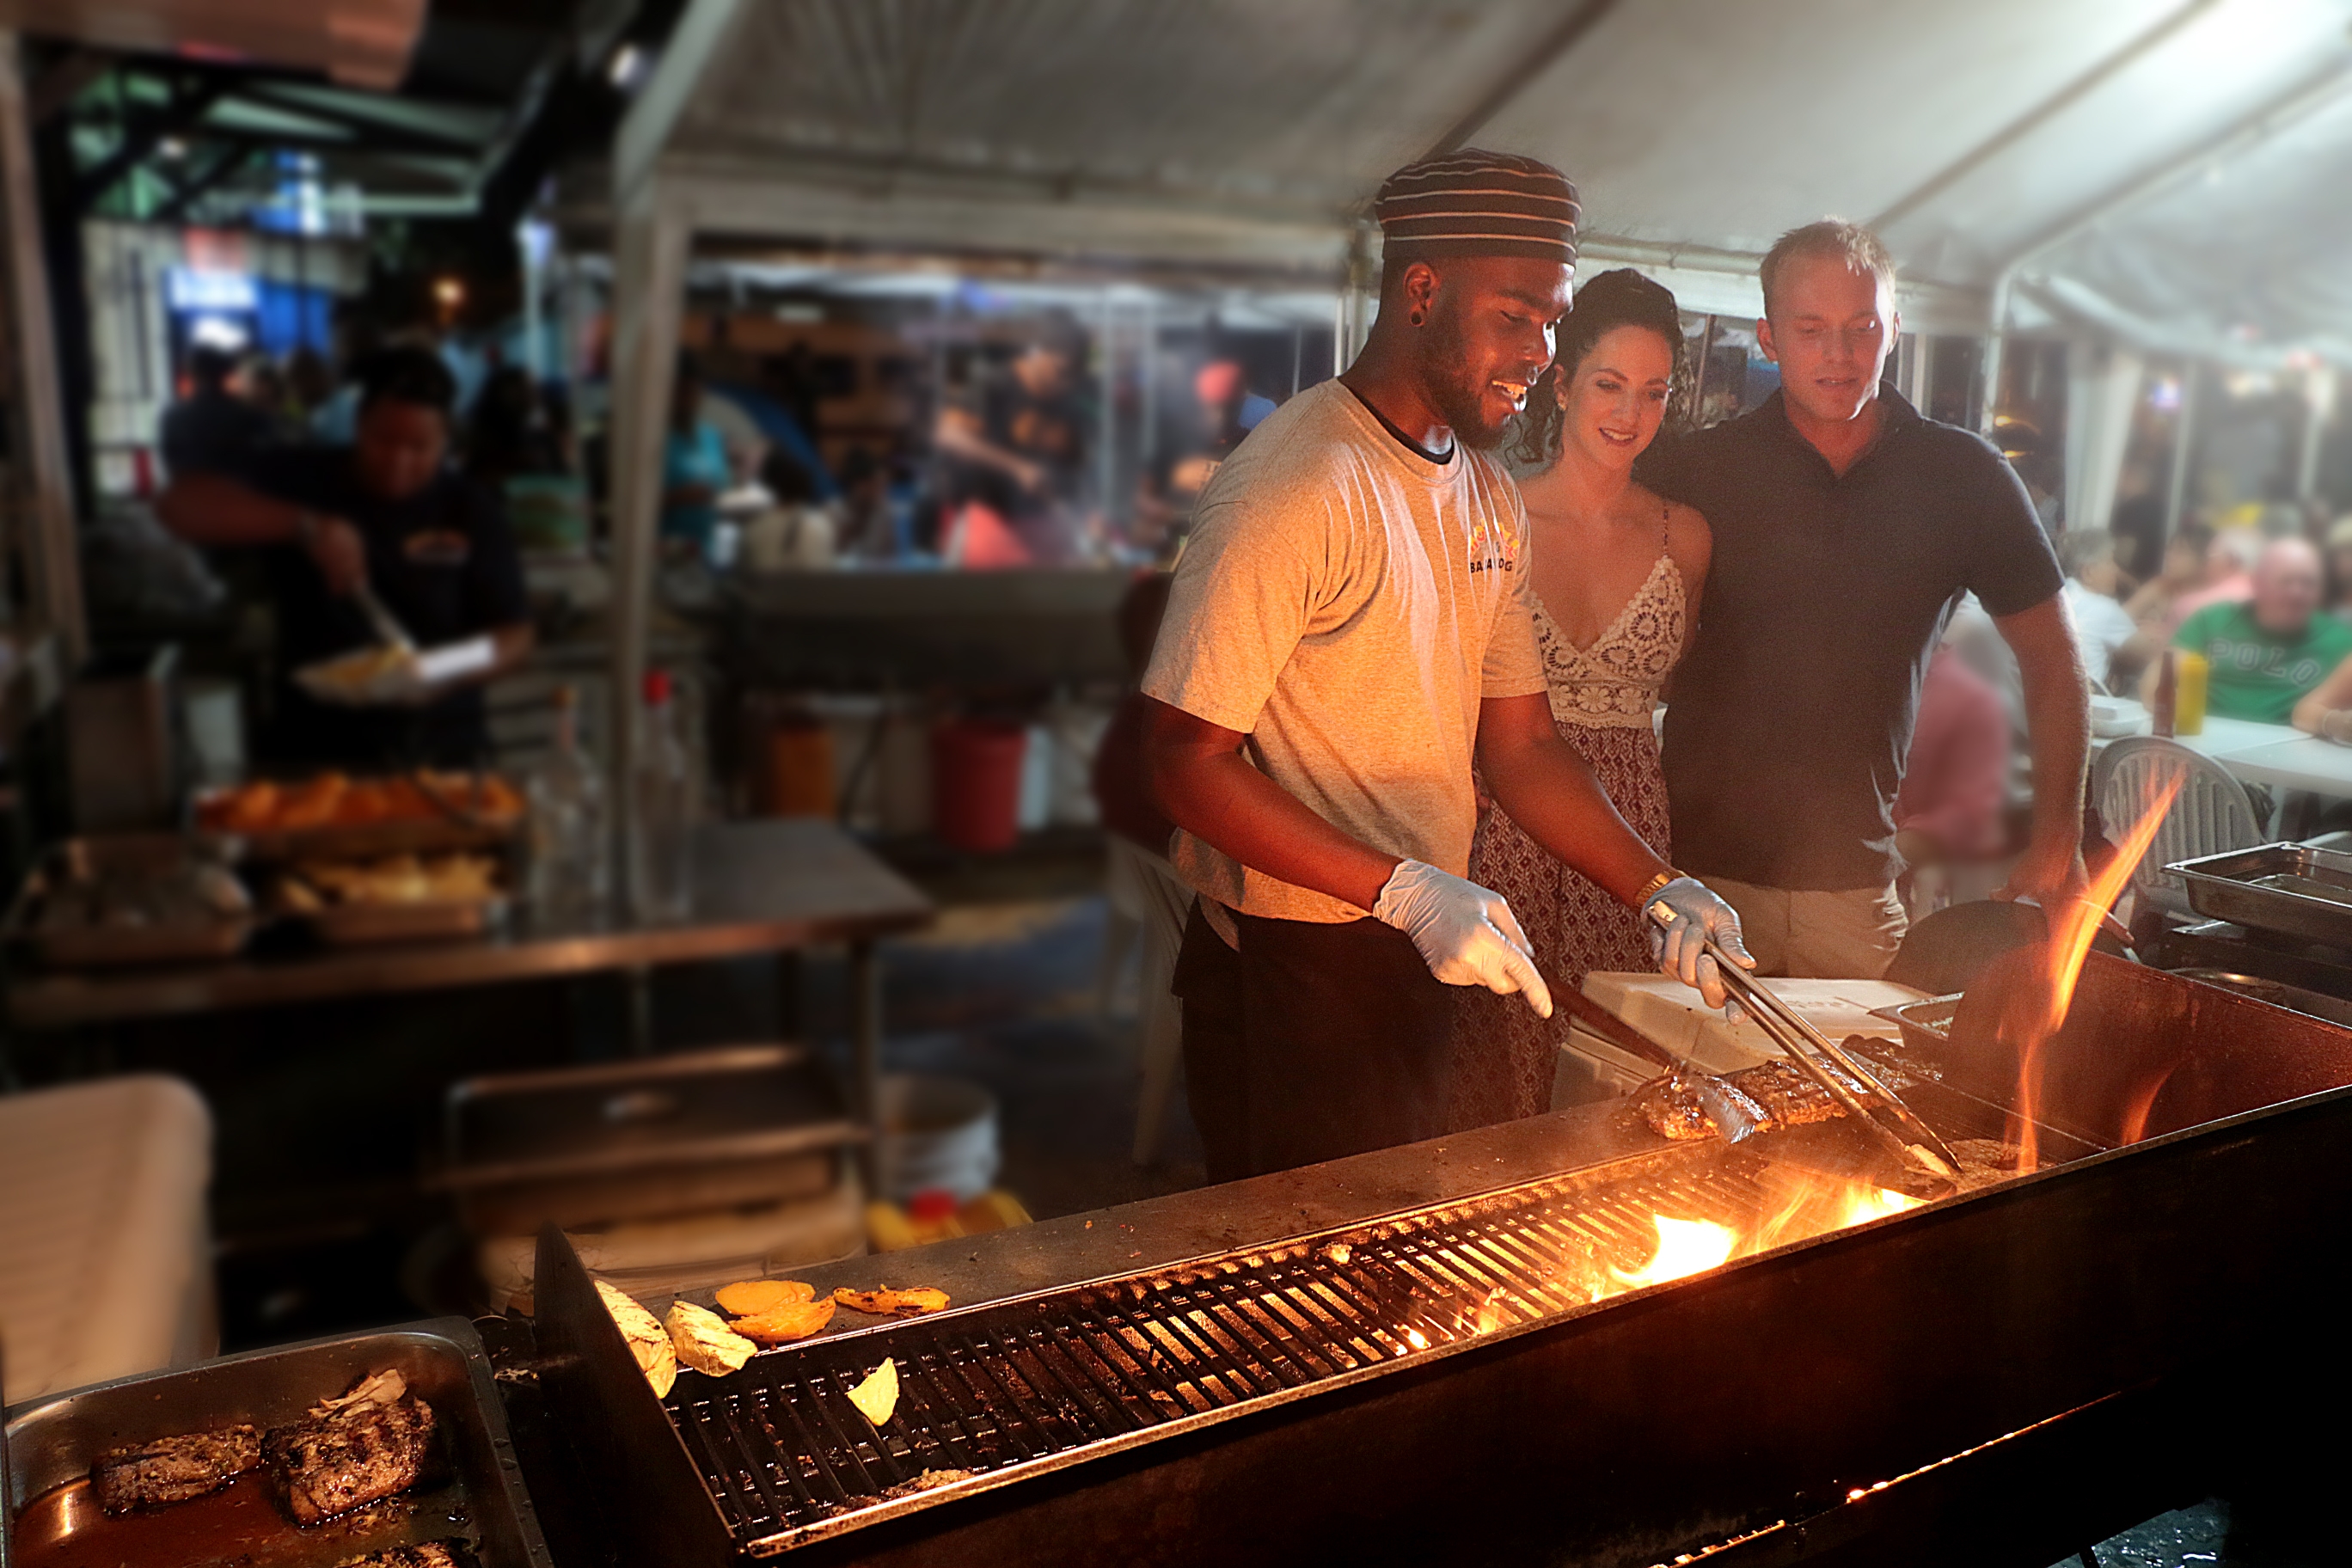 In Oistins findet jeden Freitag abend der Fish Fry statt, eine karibische Party, bei der sich Locals und Touristen treffen. Man kann viele leckere Fischgerichte probieren, karibische Musik hören und tanzen. Der Besuch lohnt sich.